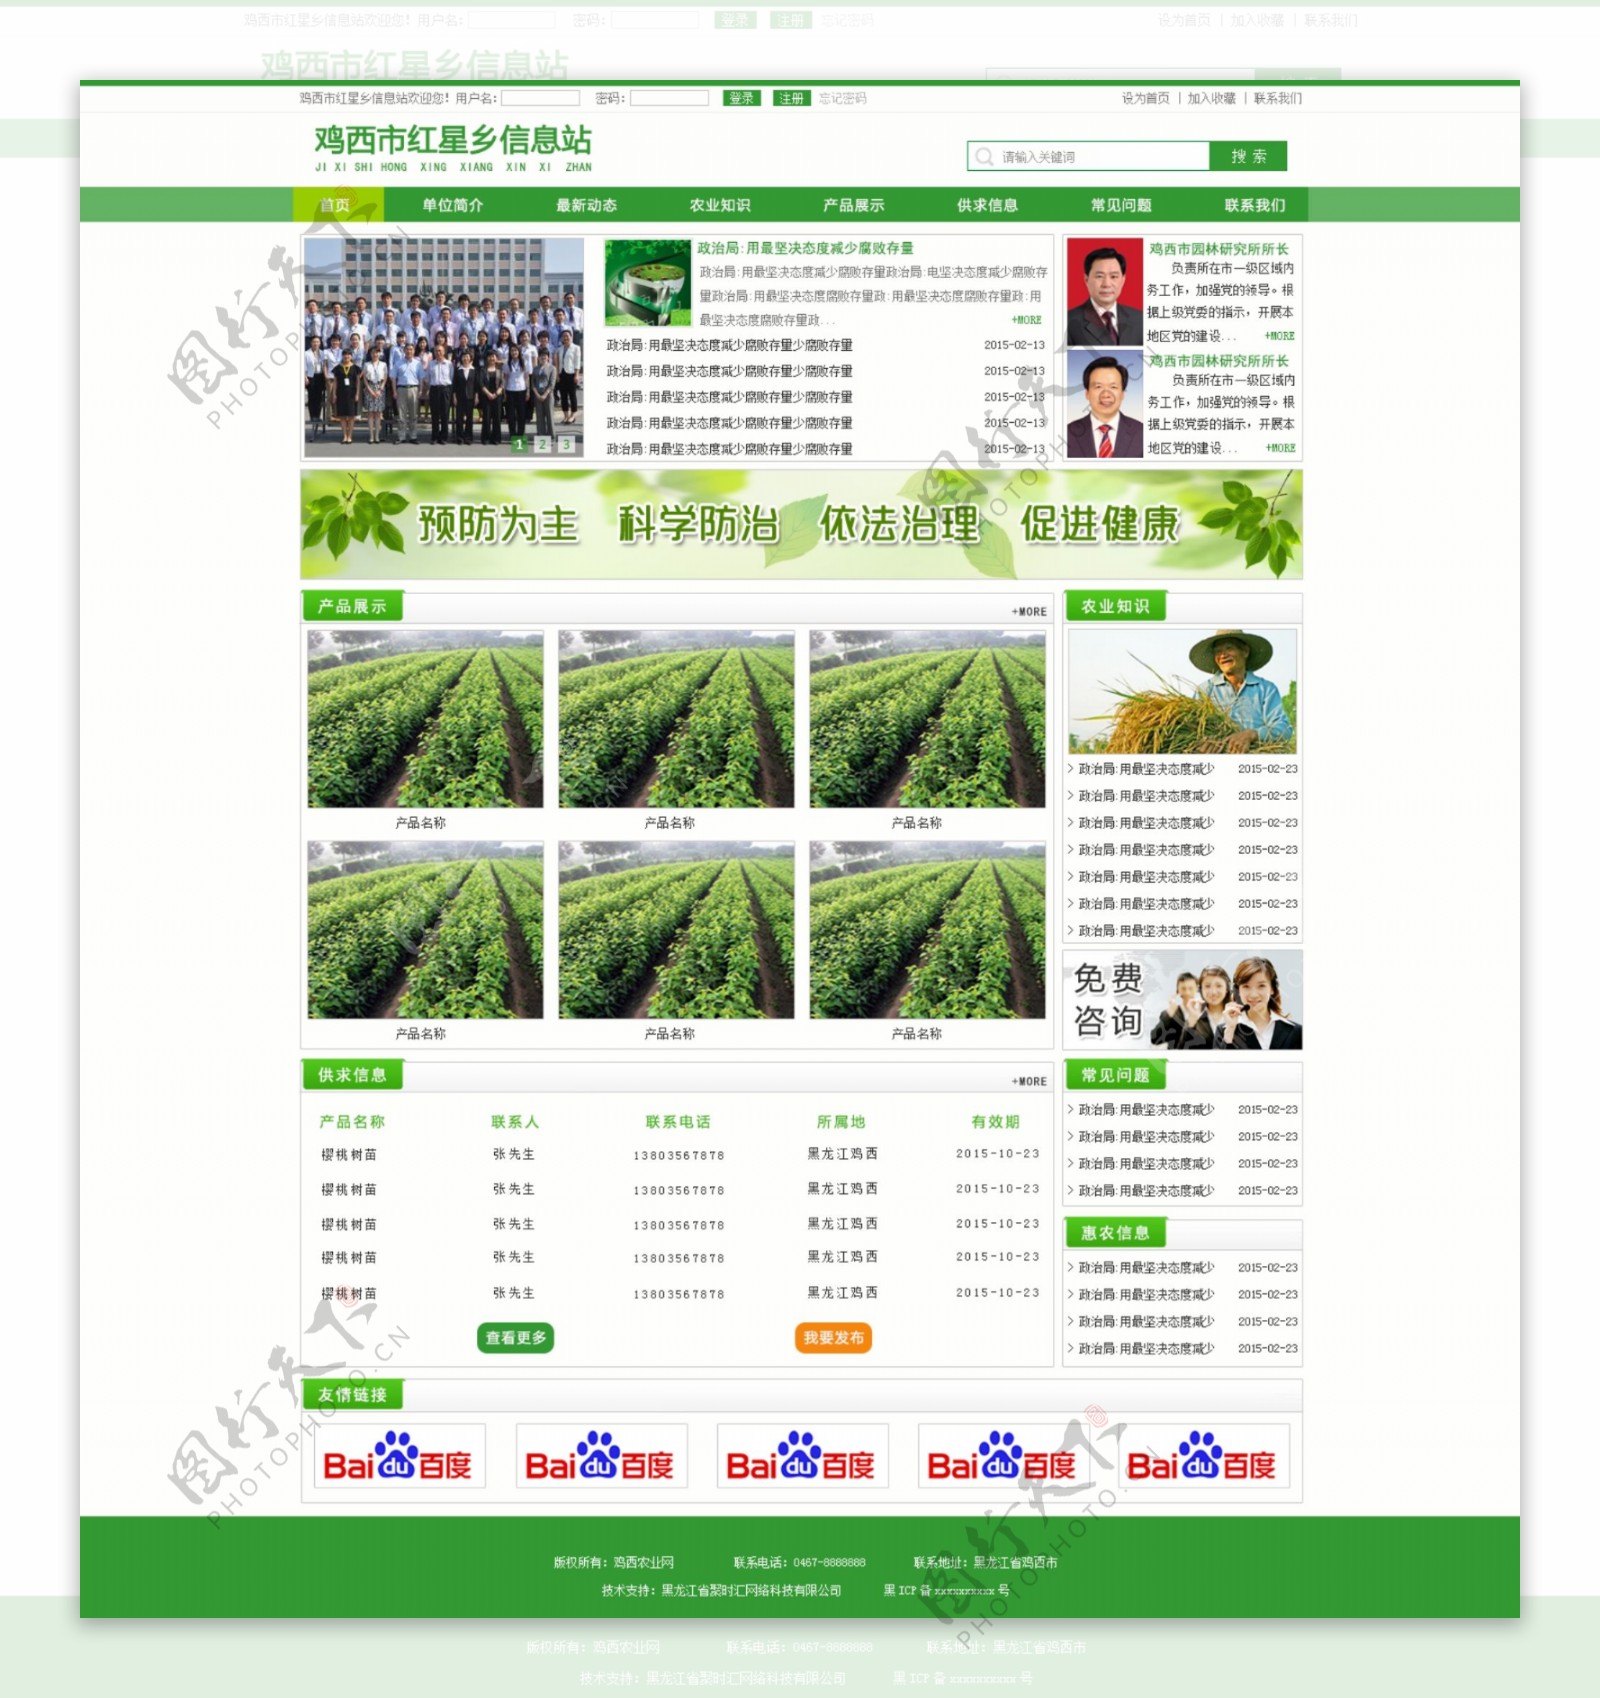 农业网站